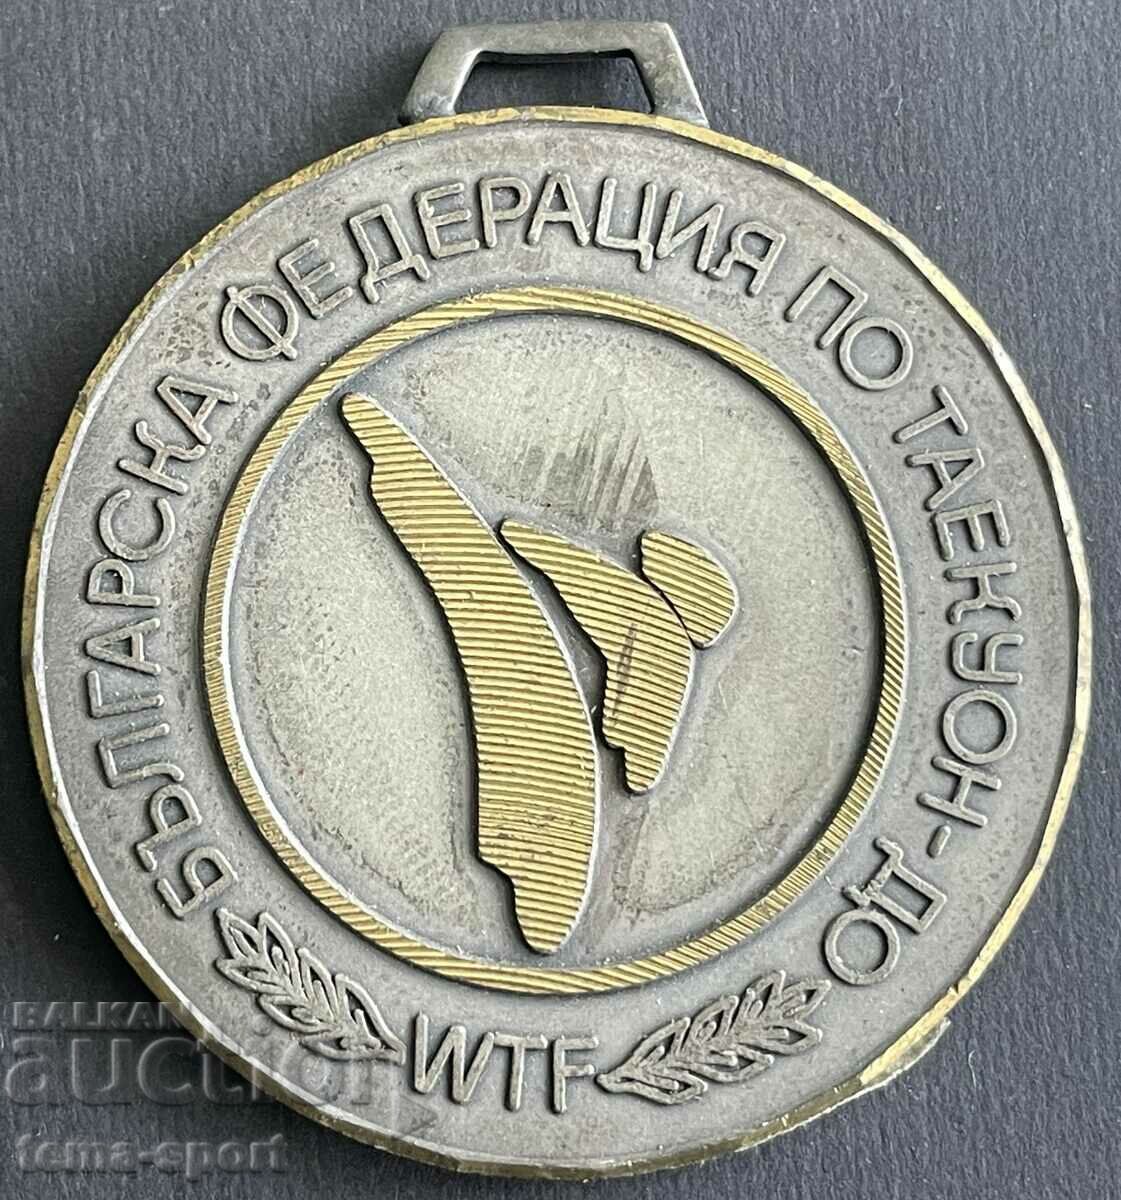 679 Bulgaria medalia Federația Bulgară Tycoon până în 2000